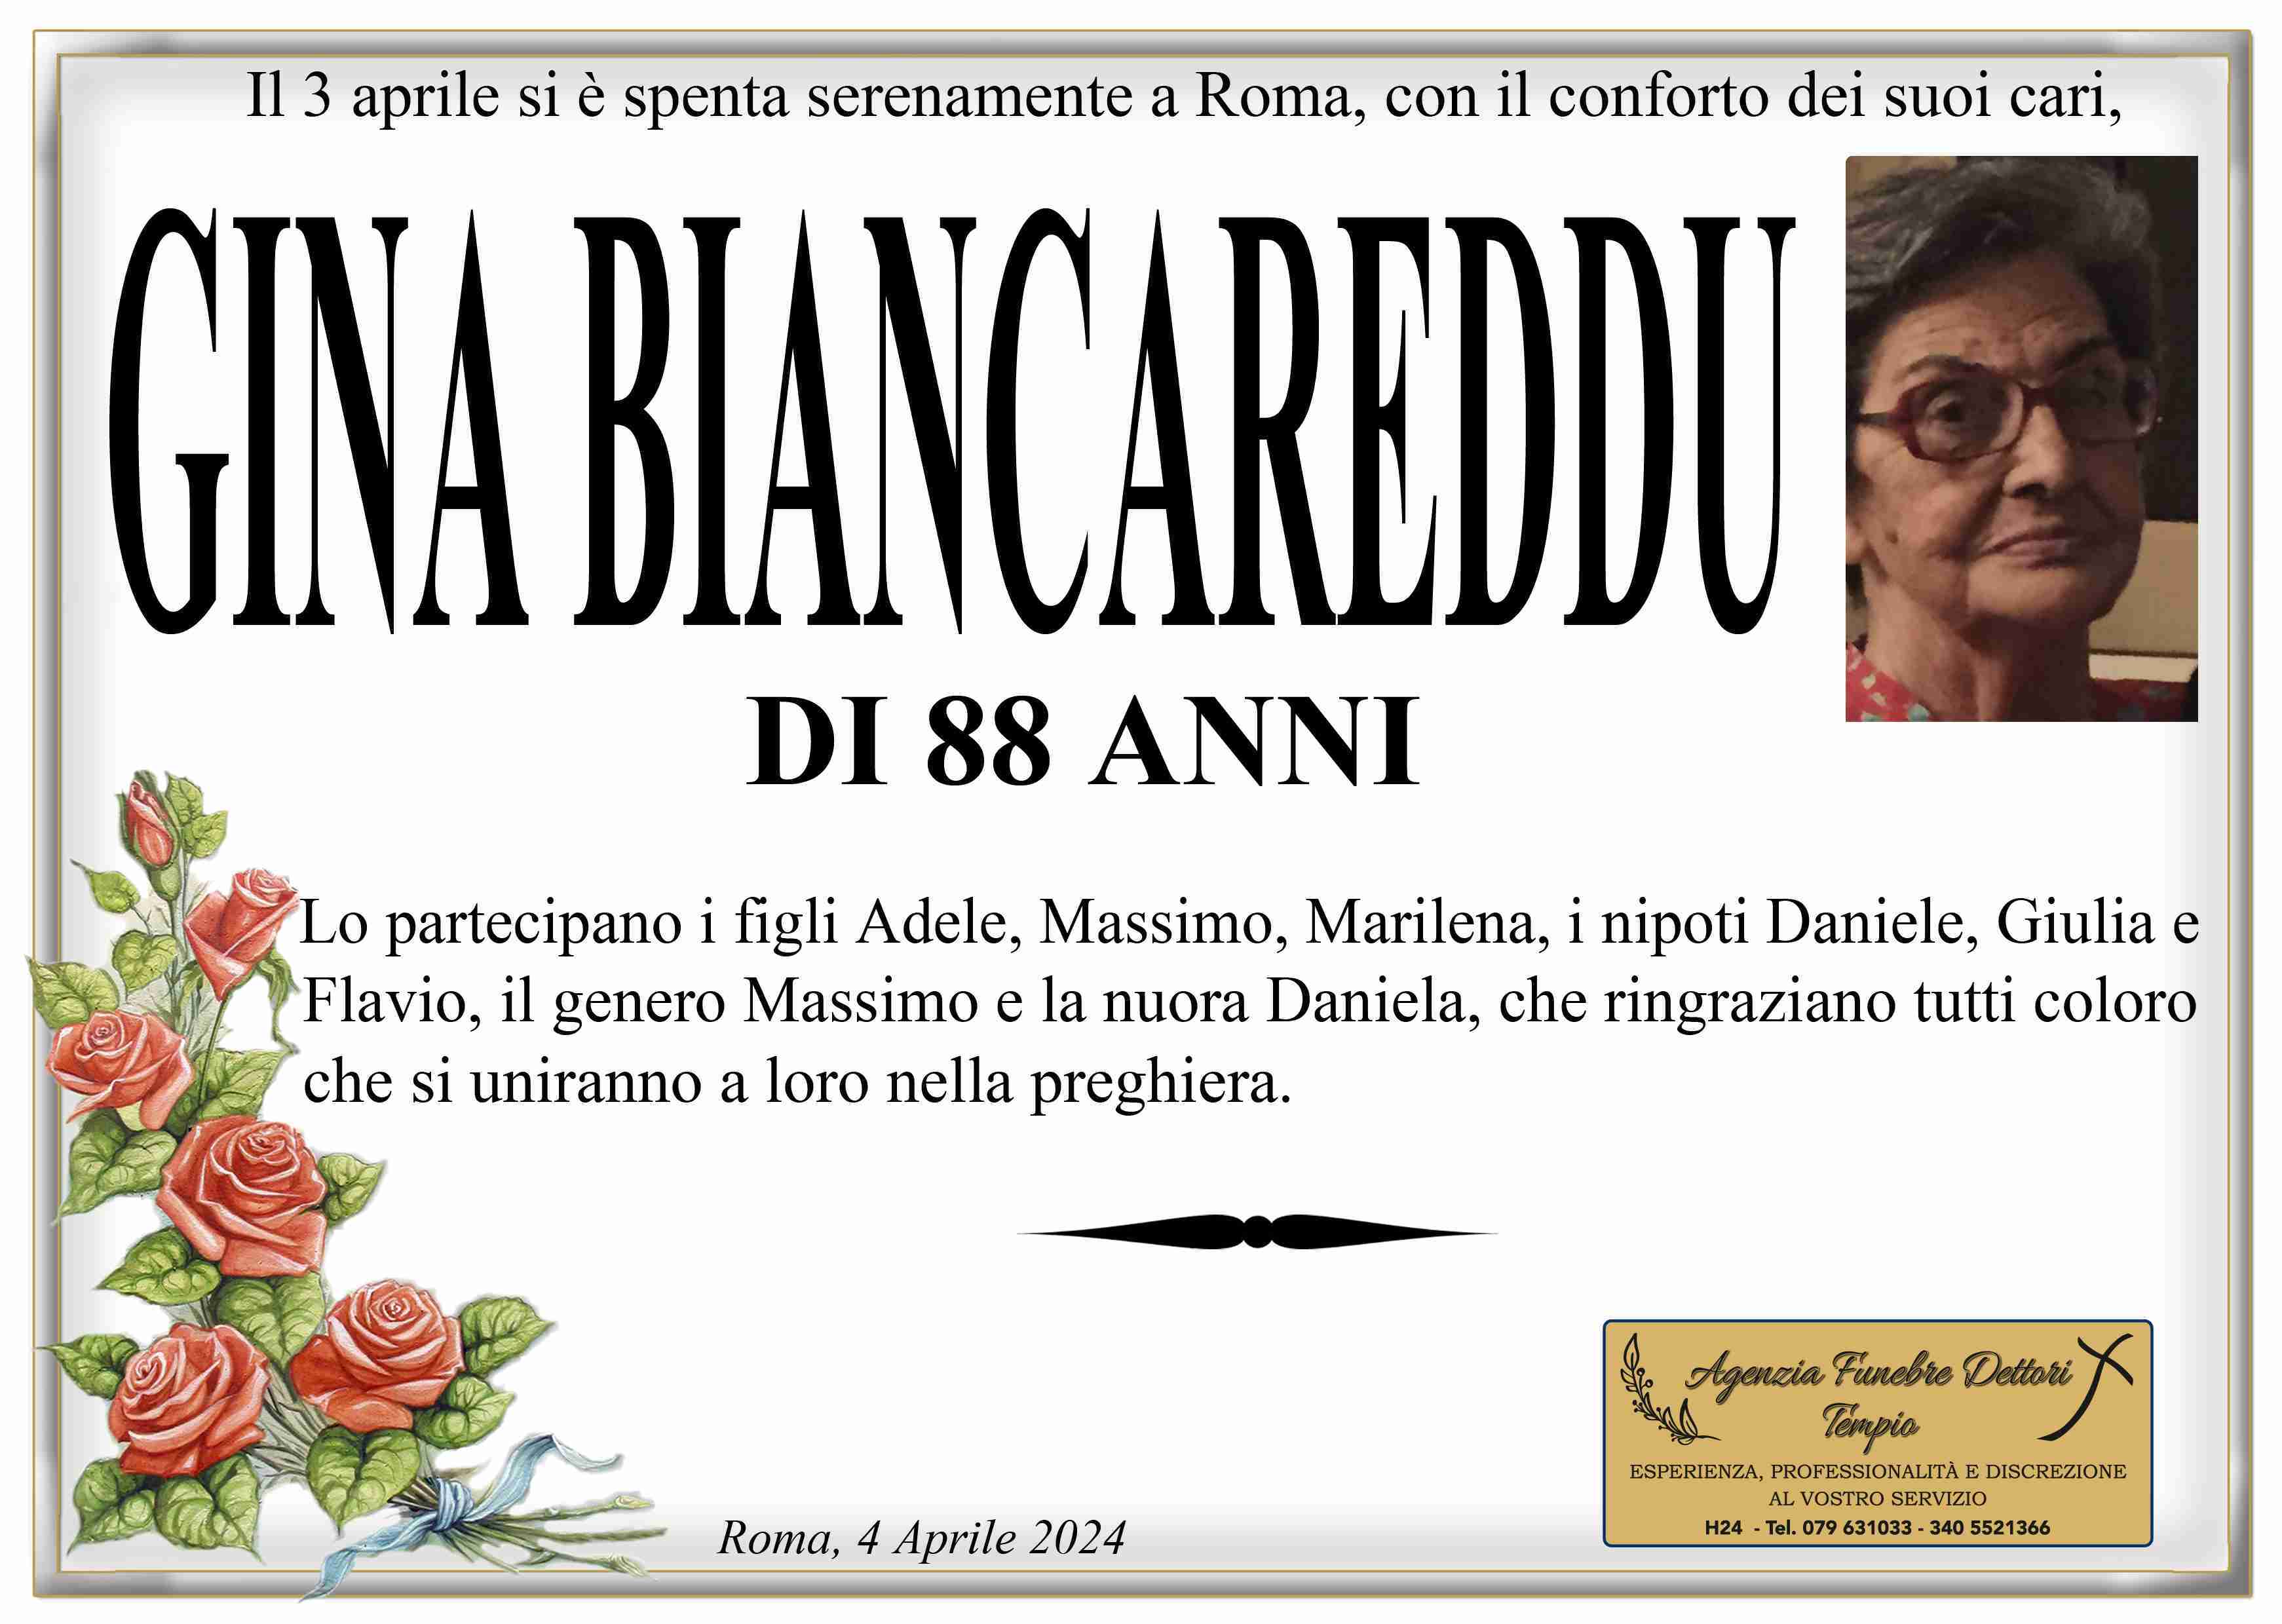 Gina Biancareddu